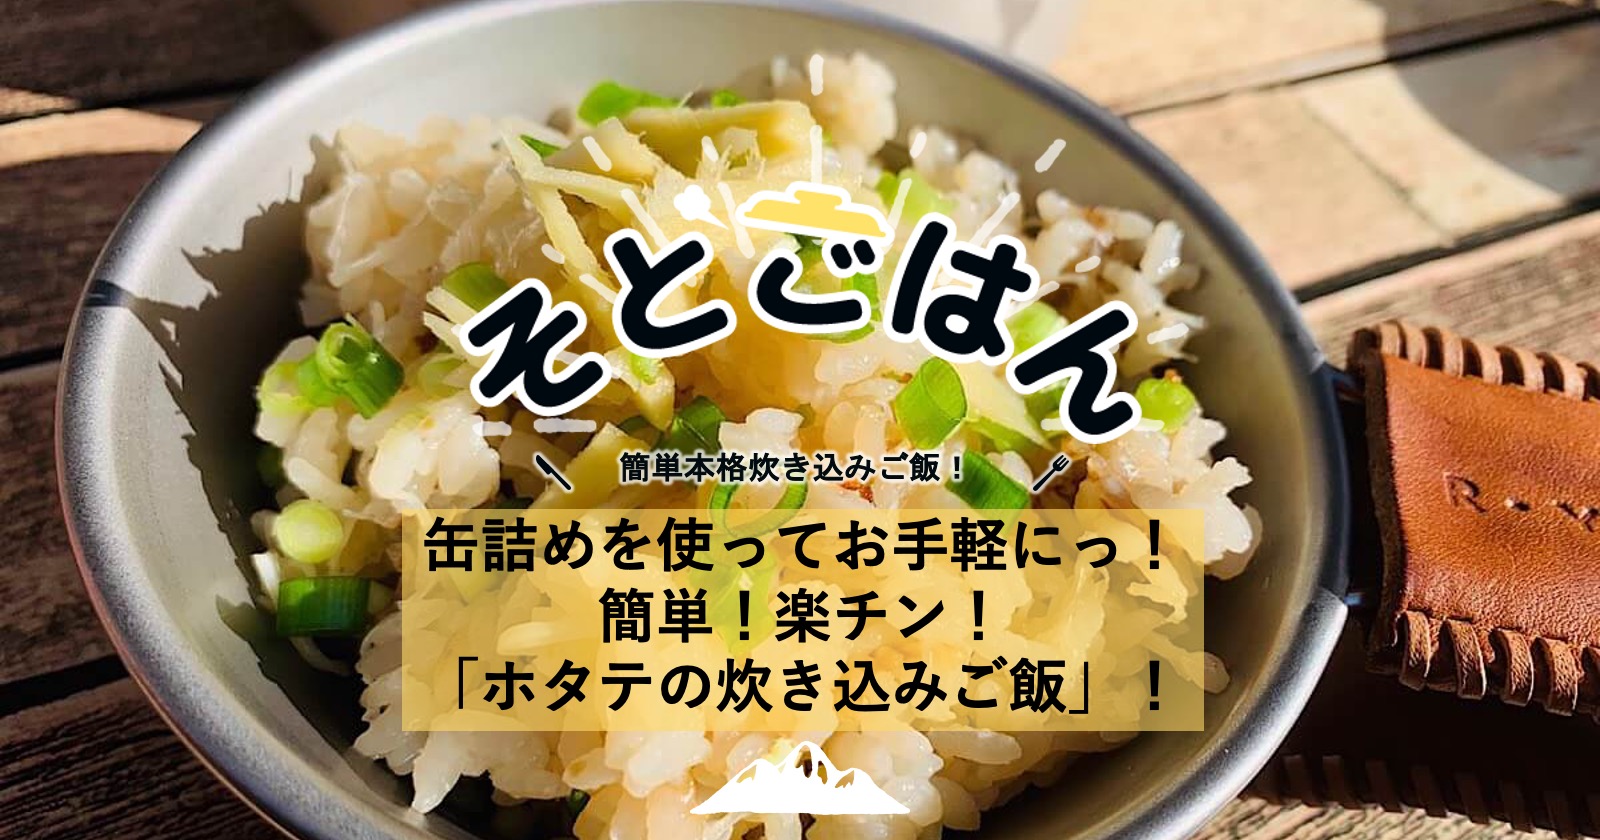 缶詰めを使ってお手軽にっ 簡単 楽チン ホタテの炊き込みご飯 ーそとごはんー Takibi タキビ キャンプ アウトドアの総合情報サイト